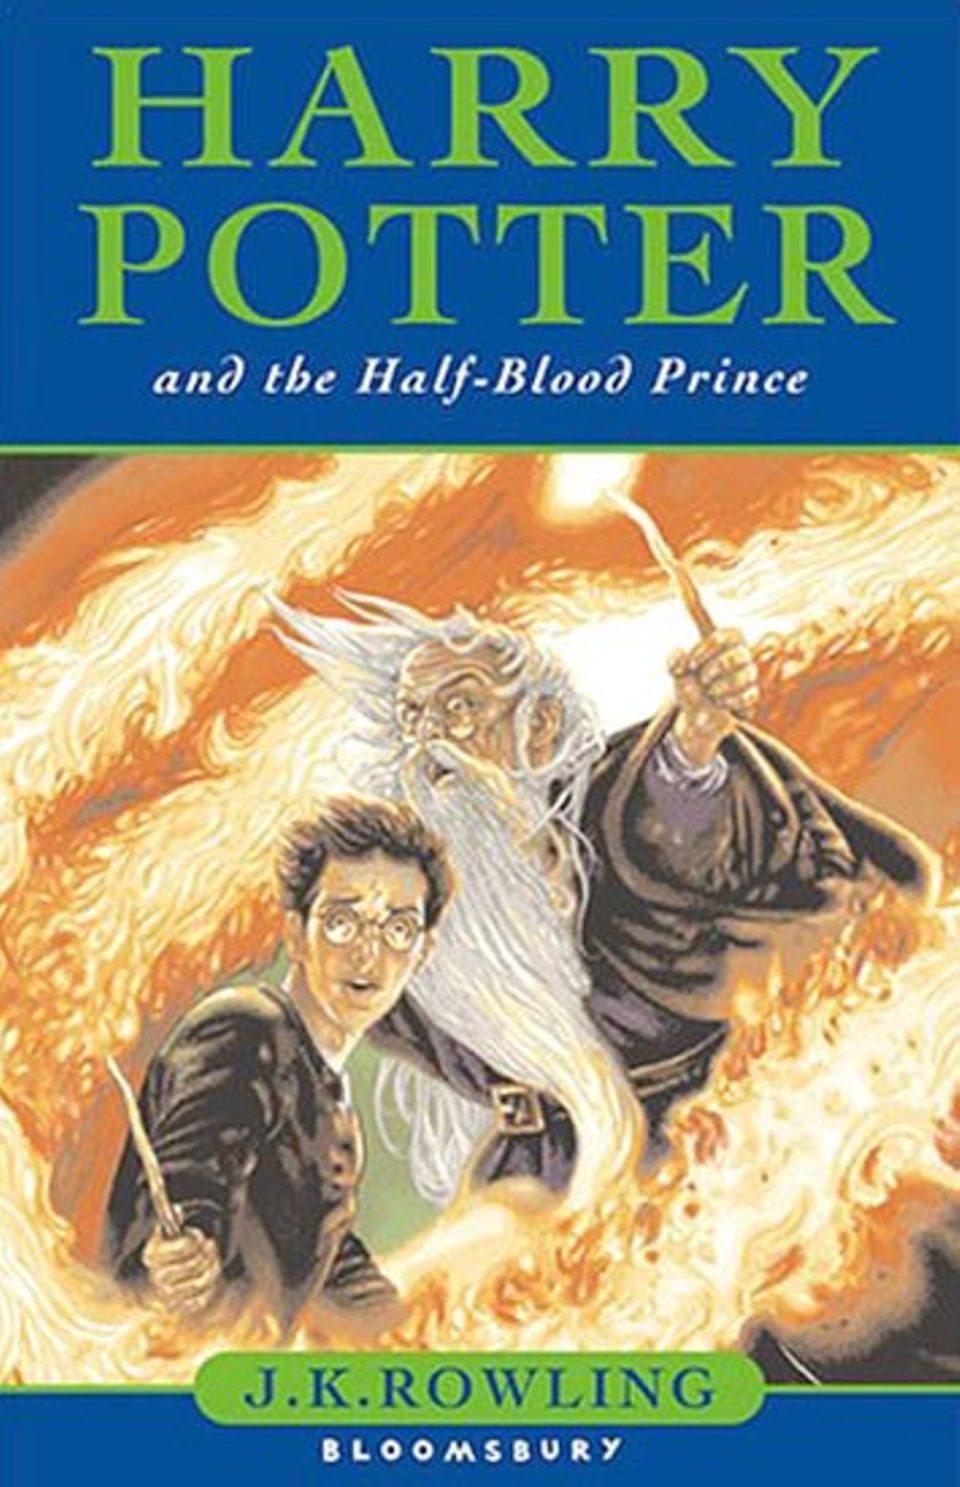 Harry Potter und der Halbblutprinz: Oder ist es ein Weasley, der in Band 6 den Feinden von Harry und seinen Freunden zum Opfer fällt? Vielleicht Ron...